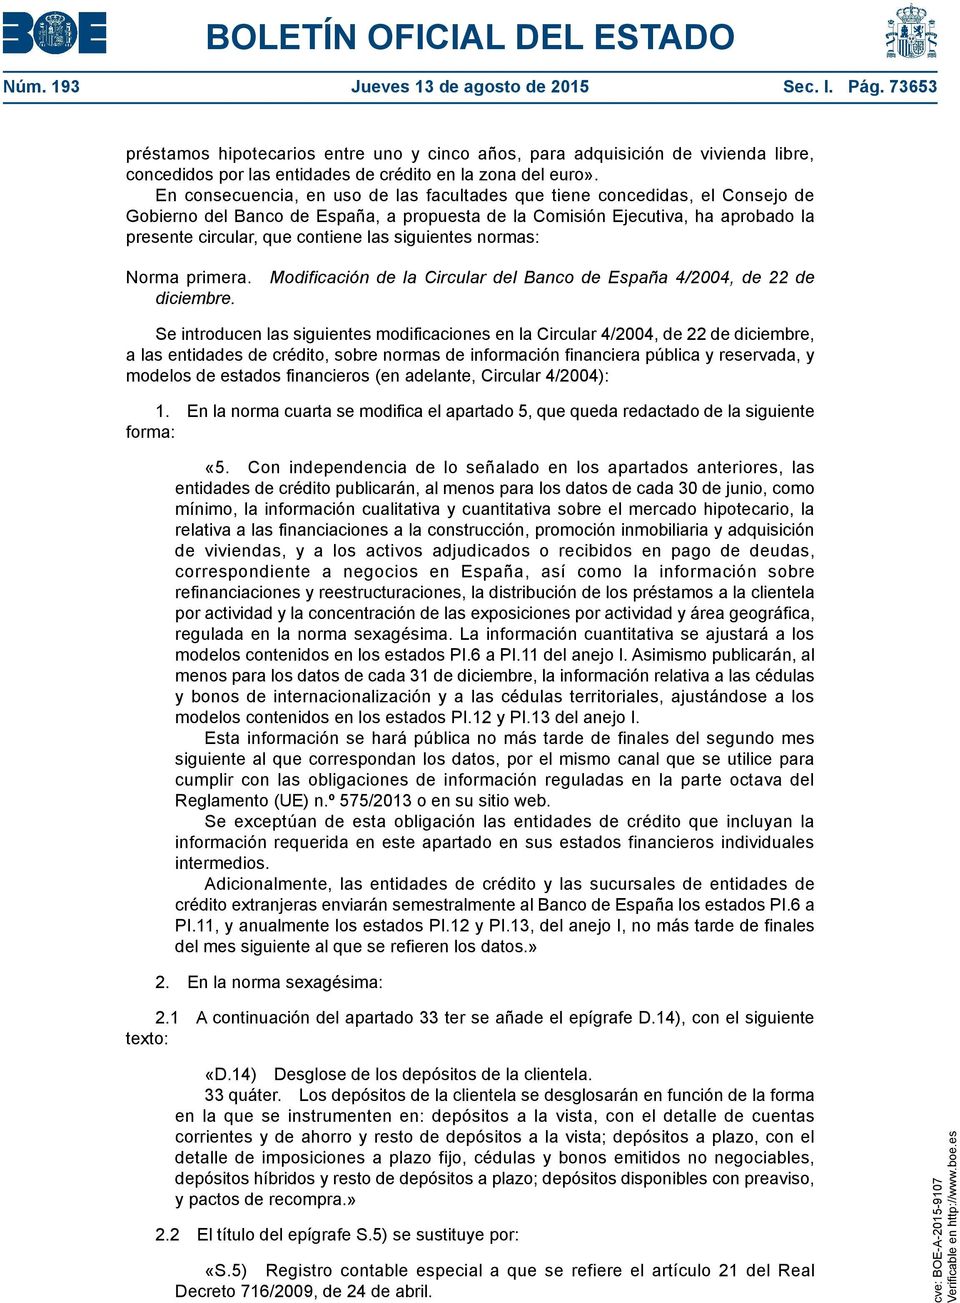 siguientes normas: Norma primera. Modificación de la Circular del Banco de España 4/2004, de 22 de diciembre.